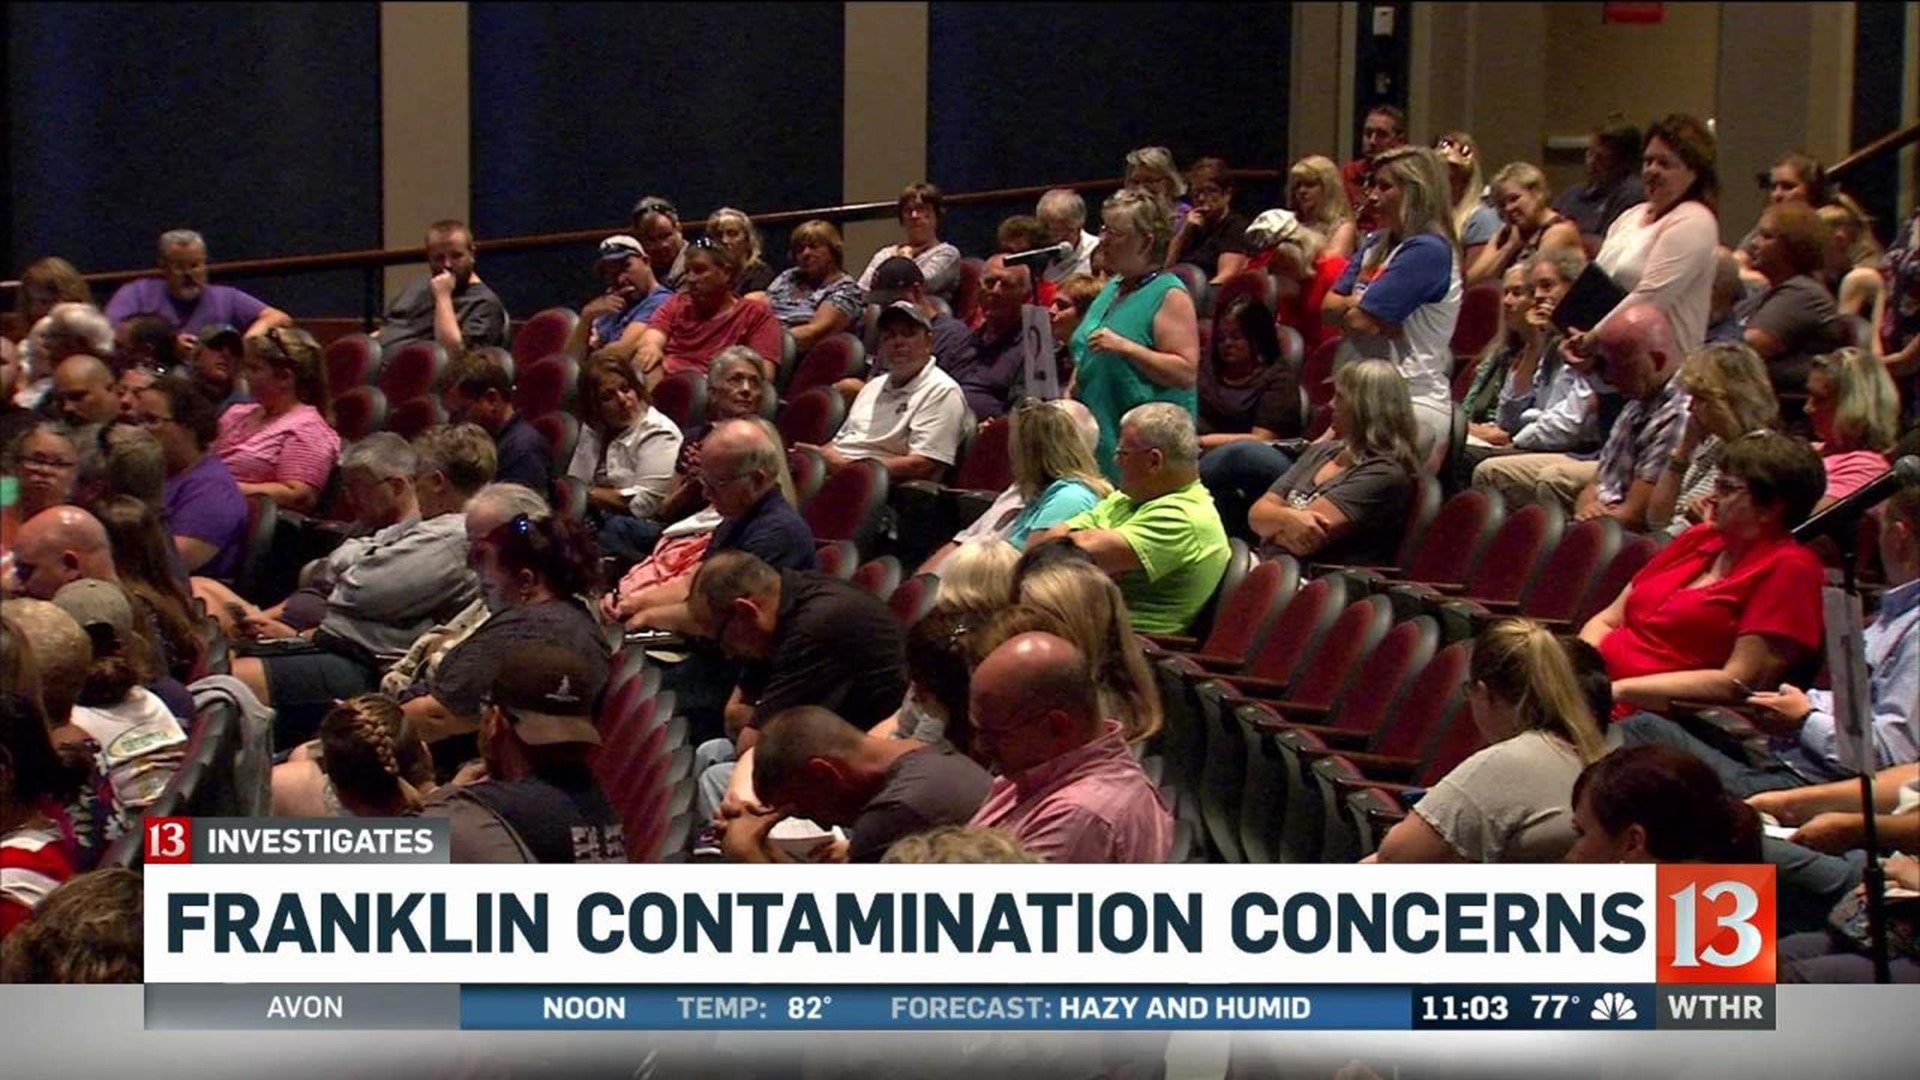 Franklin contamination concerns forum